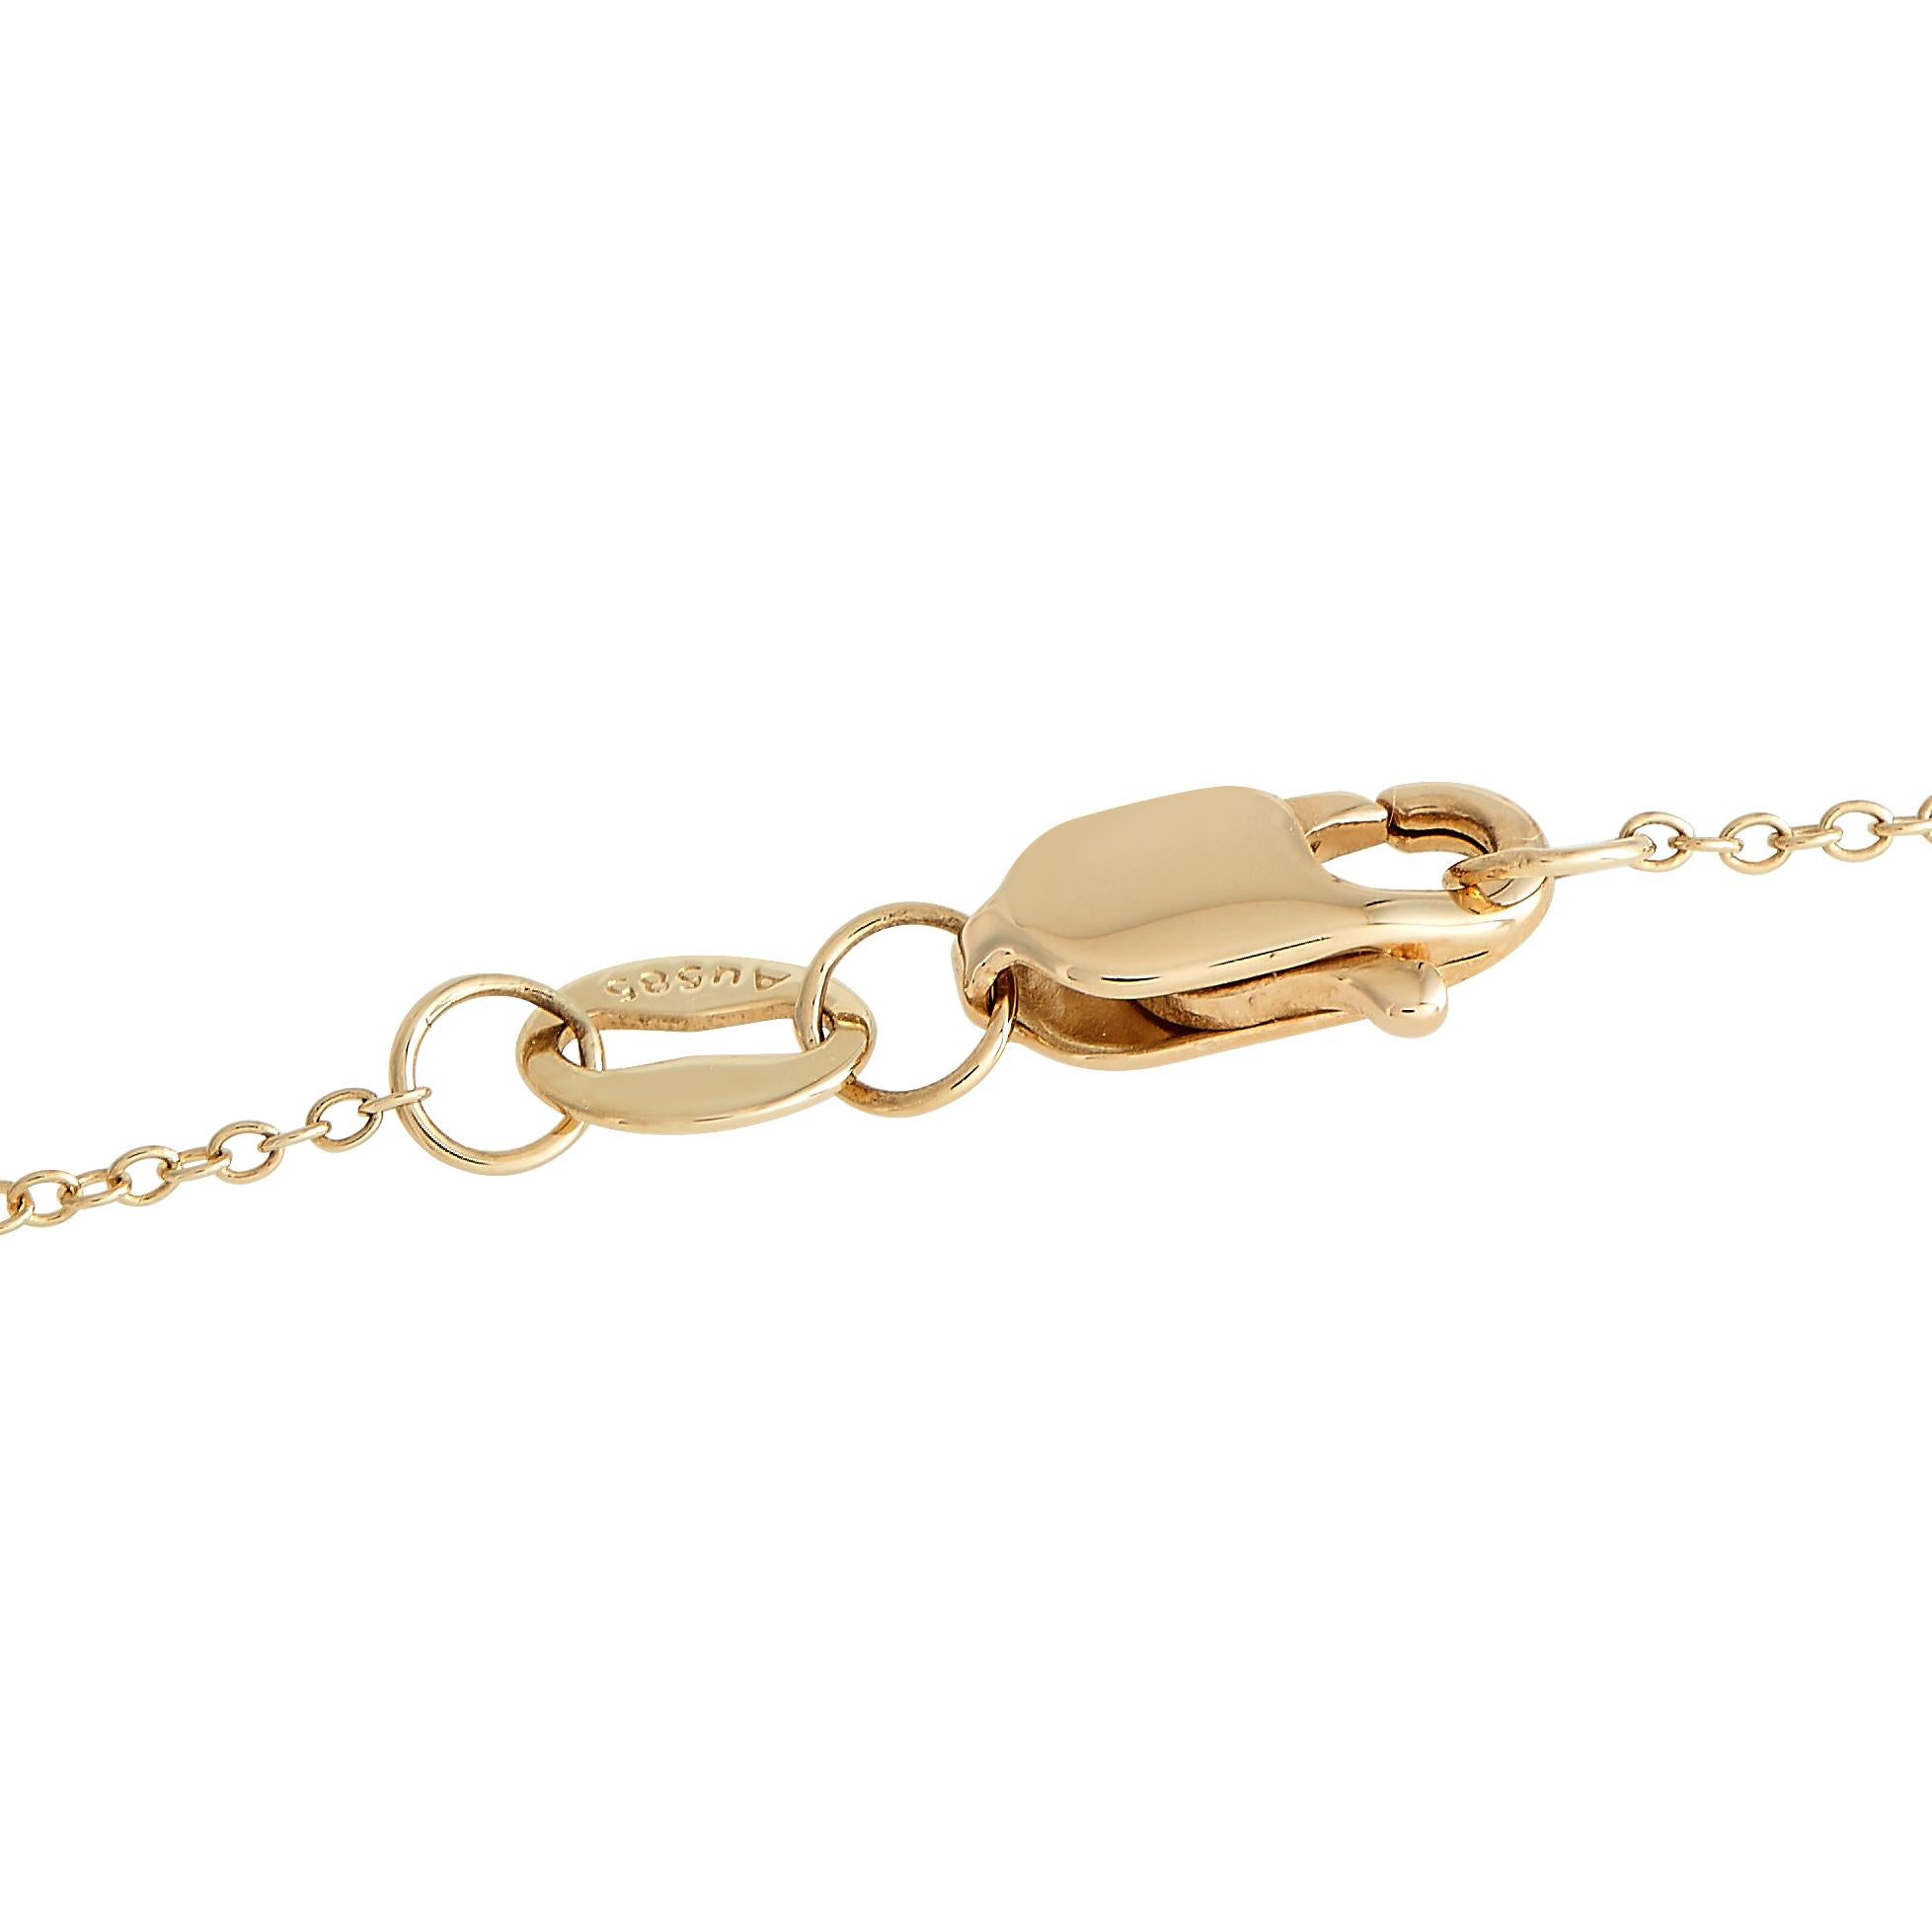 Ce collier en diamant ajoutera une touche de fraîcheur à votre garde-robe quotidienne. Il est accompagné d'une longue chaîne de 15 ans en or jaune 14K. Le pendentif de 0,75 par 0,50 présente une silhouette en forme de O recouverte de diamants ronds.